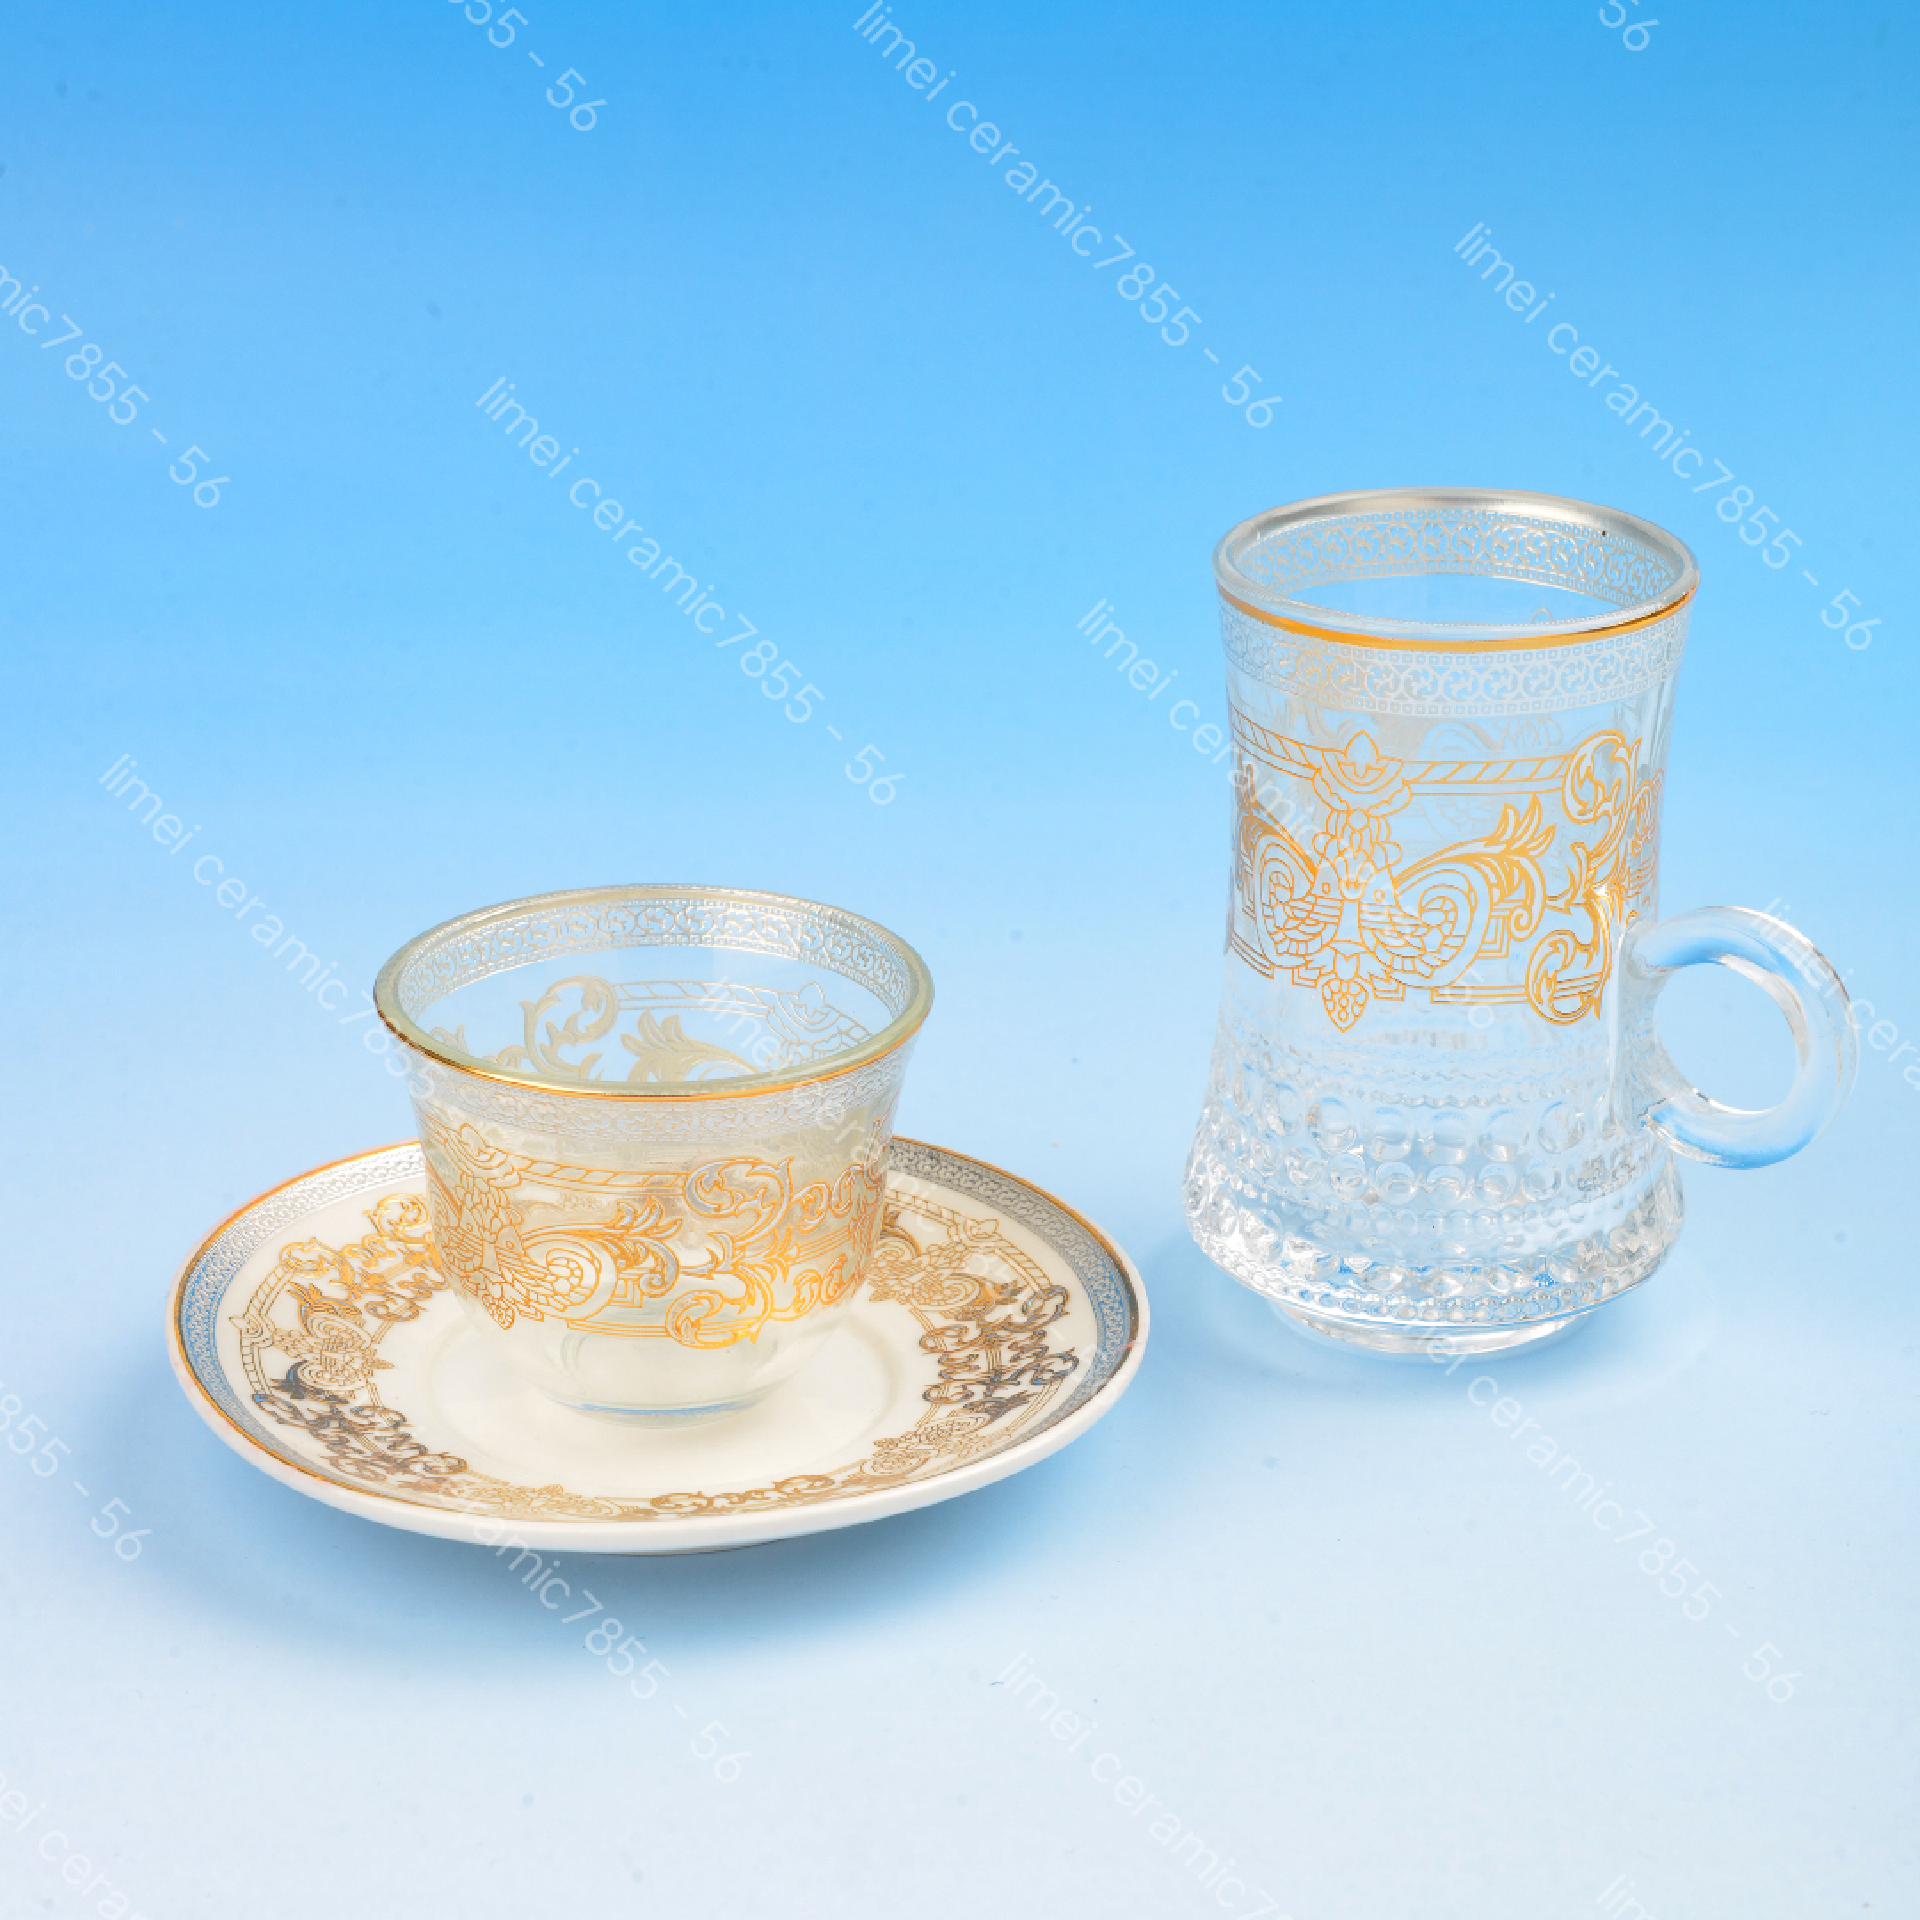 玻璃杯陶瓷碟18头礼盒包装出口中东热卖款红茶咖啡六杯碟手指杯